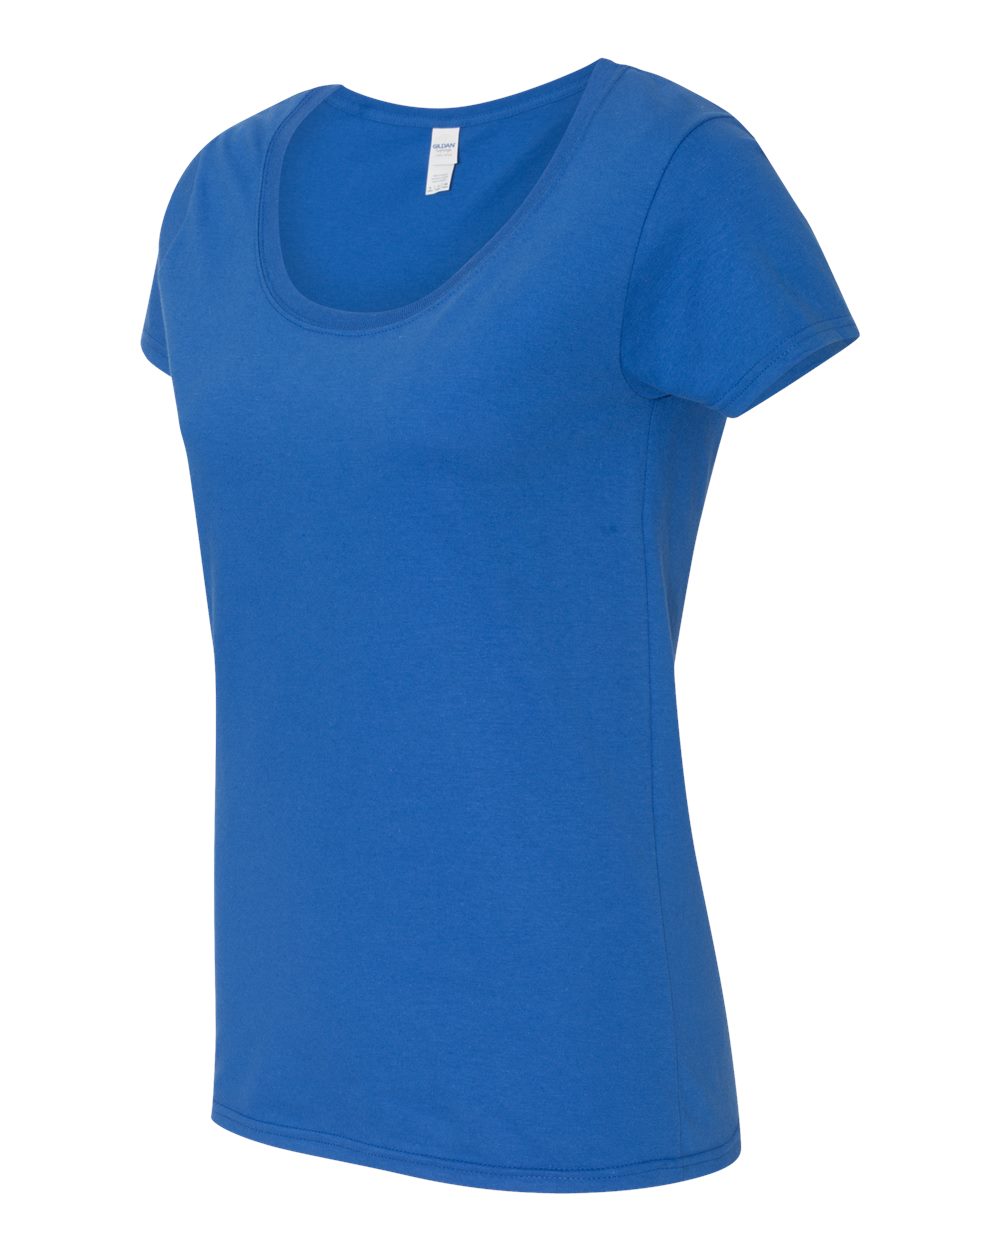 Gildan 64550L - Softstyle Women's Deep Scoopneck T-Shirt $3.92